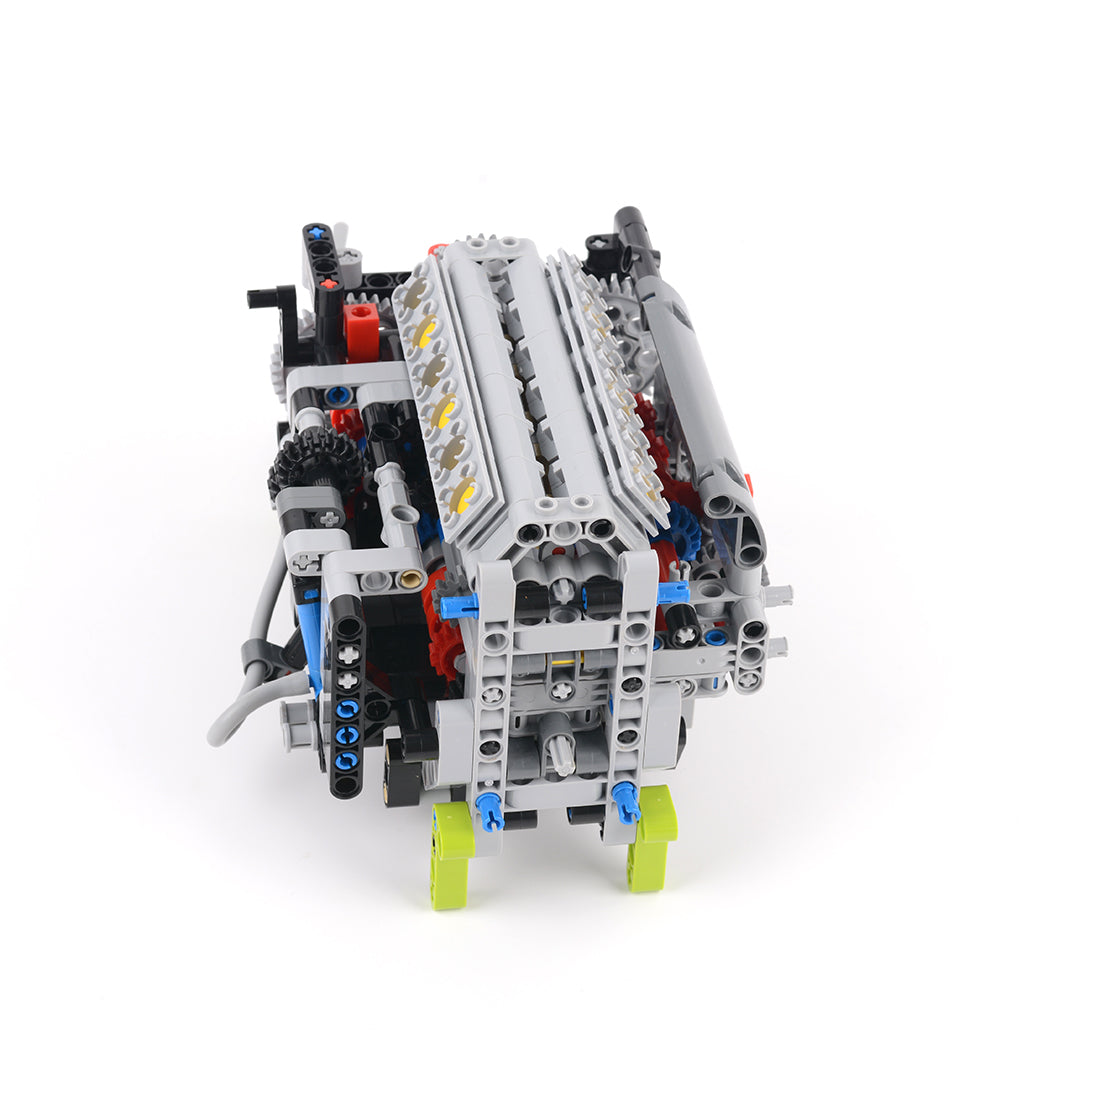 MOC V12 Engine Building Block - Build Your Own V12 Engine 